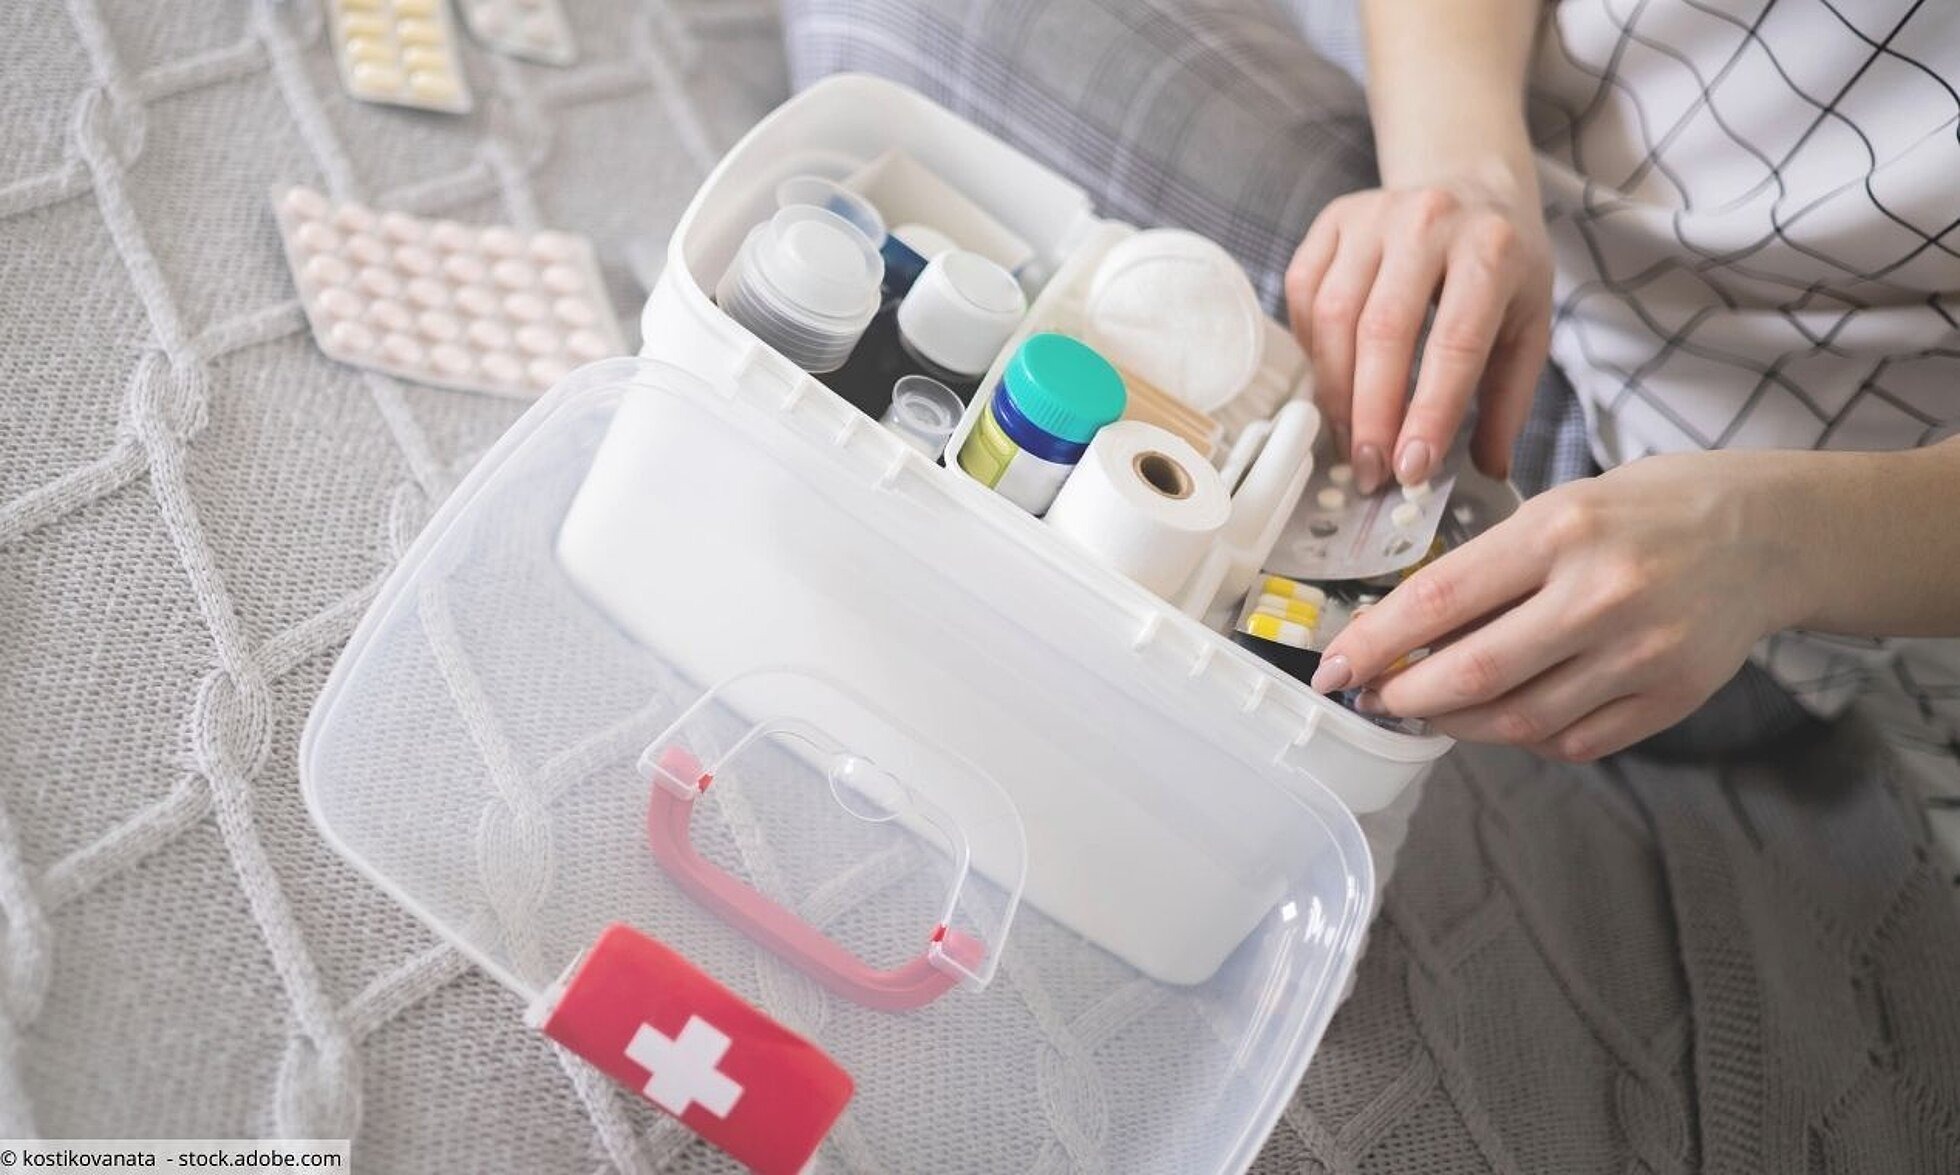 Frau sortiert Tabletten, Salben, Verbandszeug in Erste-Hilfe-Box